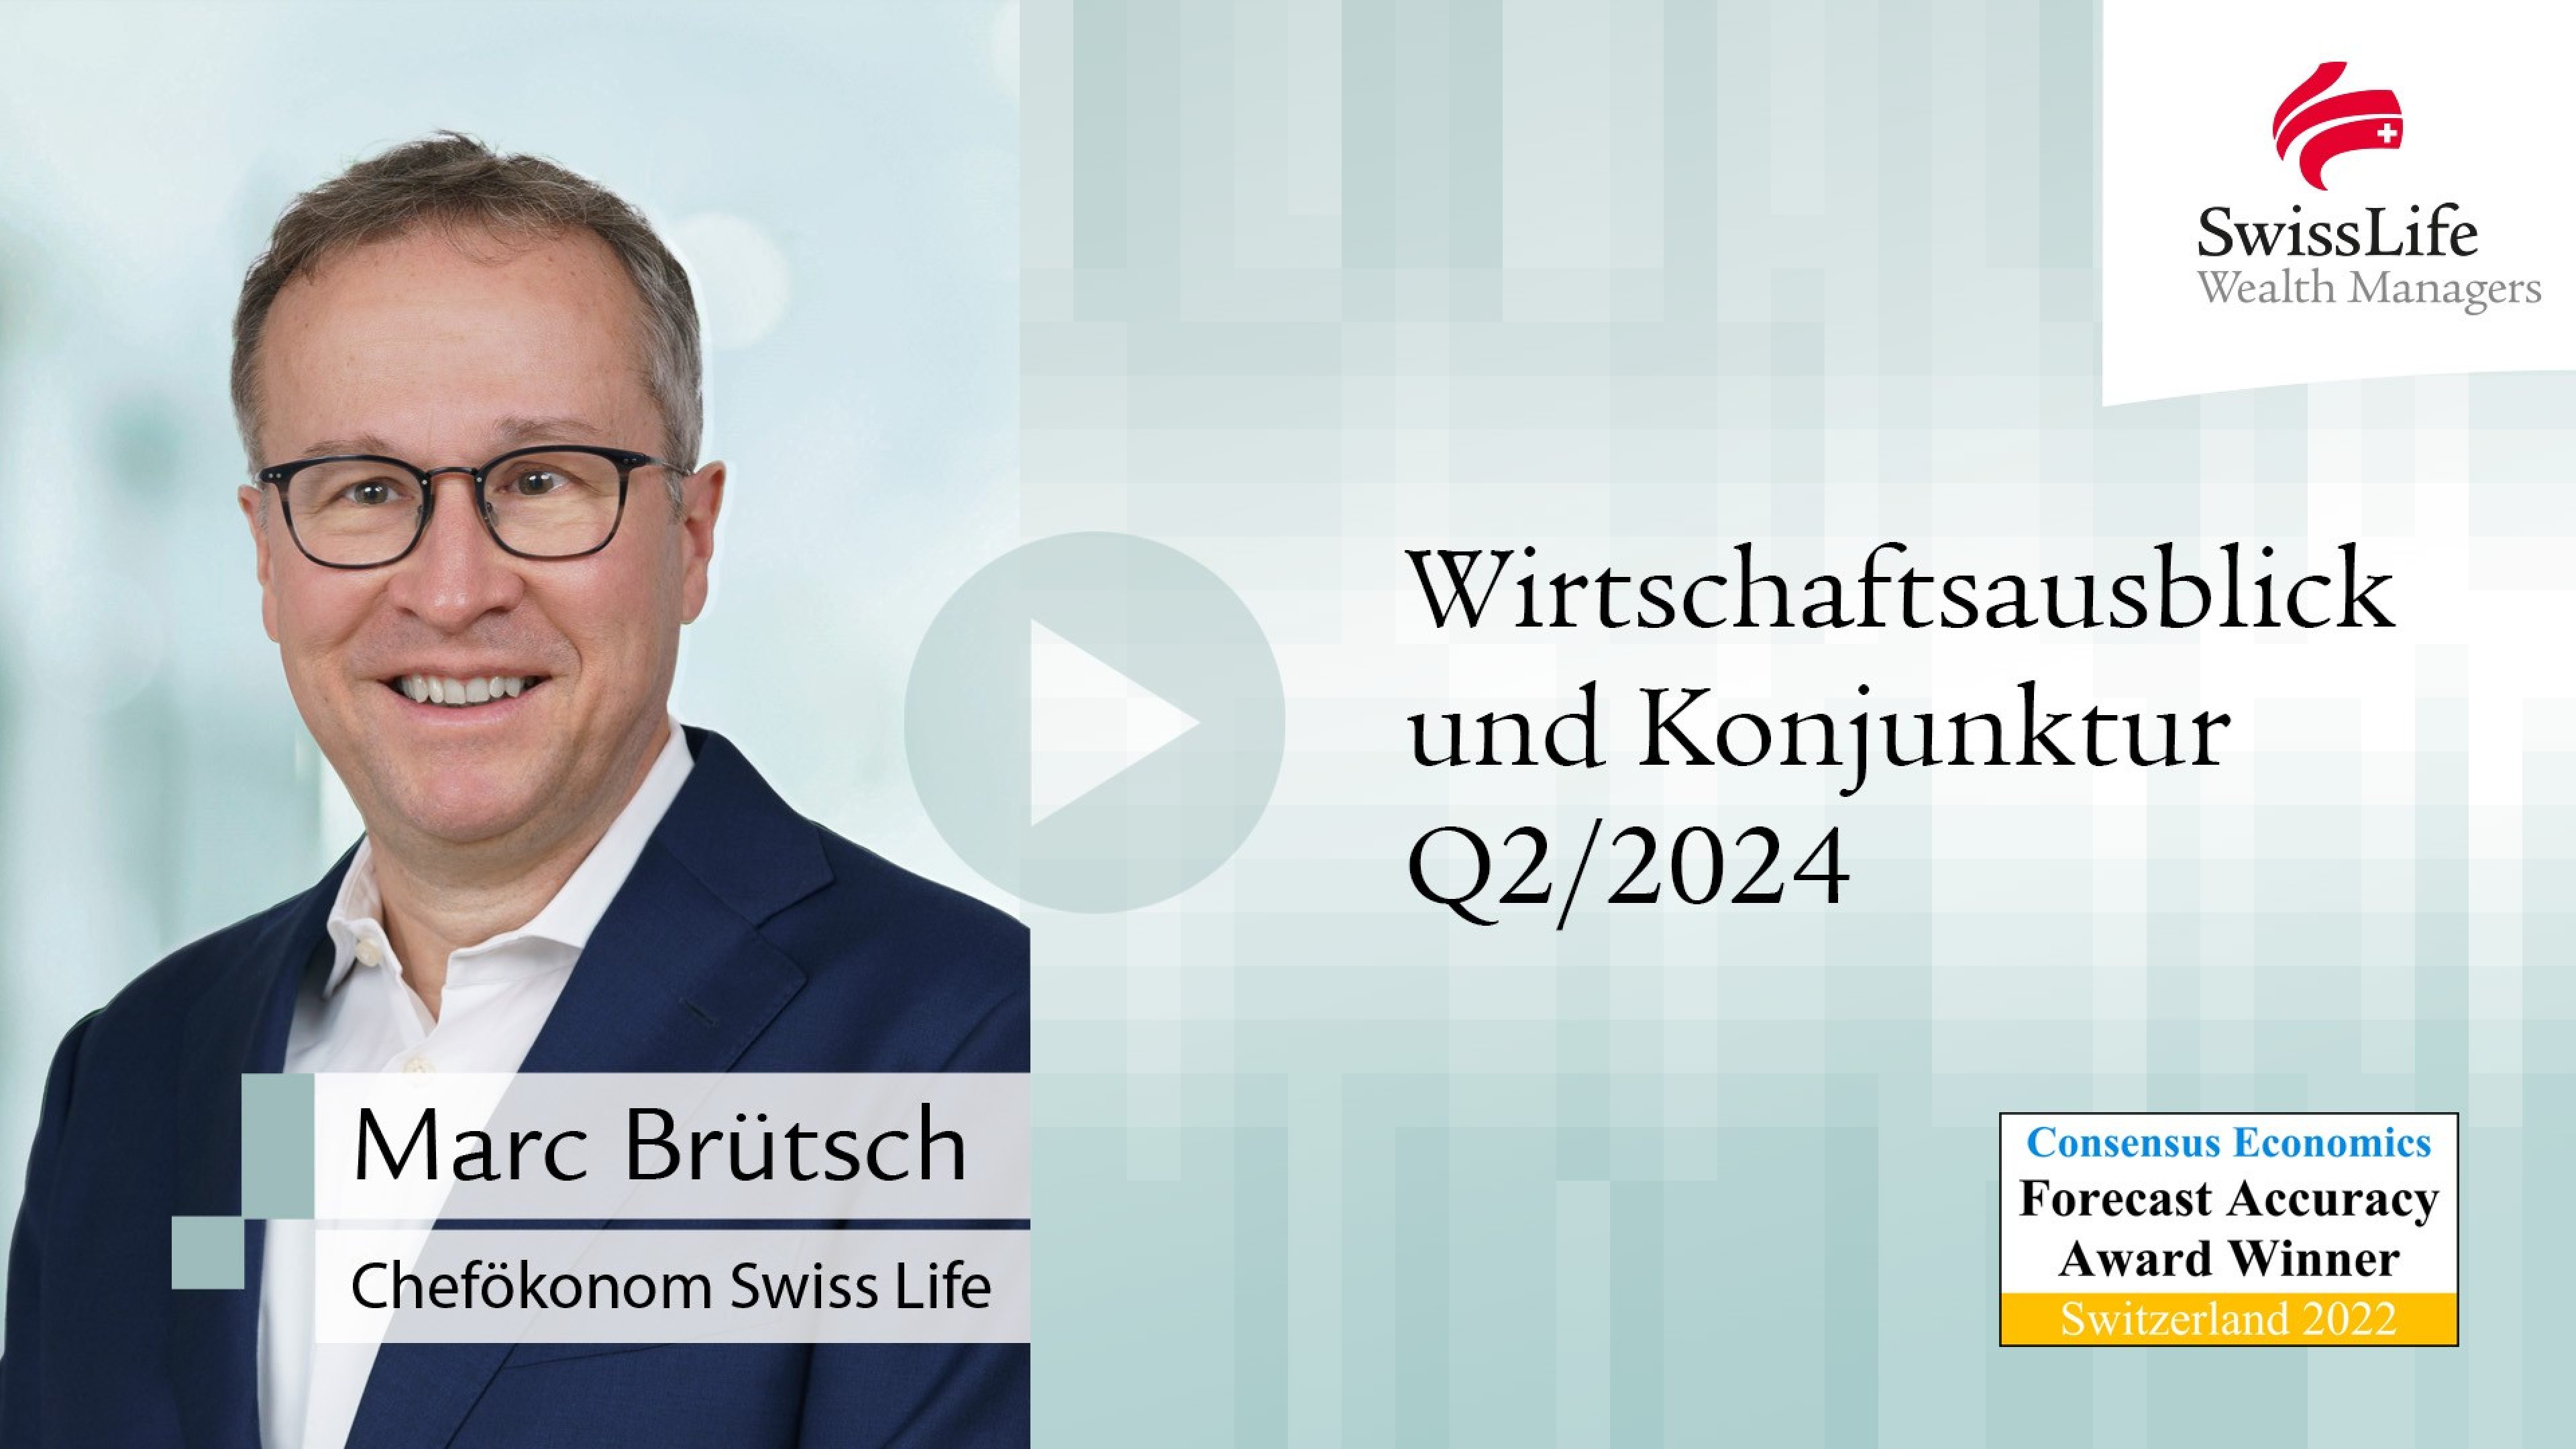 Quartalsvideo 4-2023 Wirtschaftsausblick und Konjunktur von Swiss Life Wealth Managers